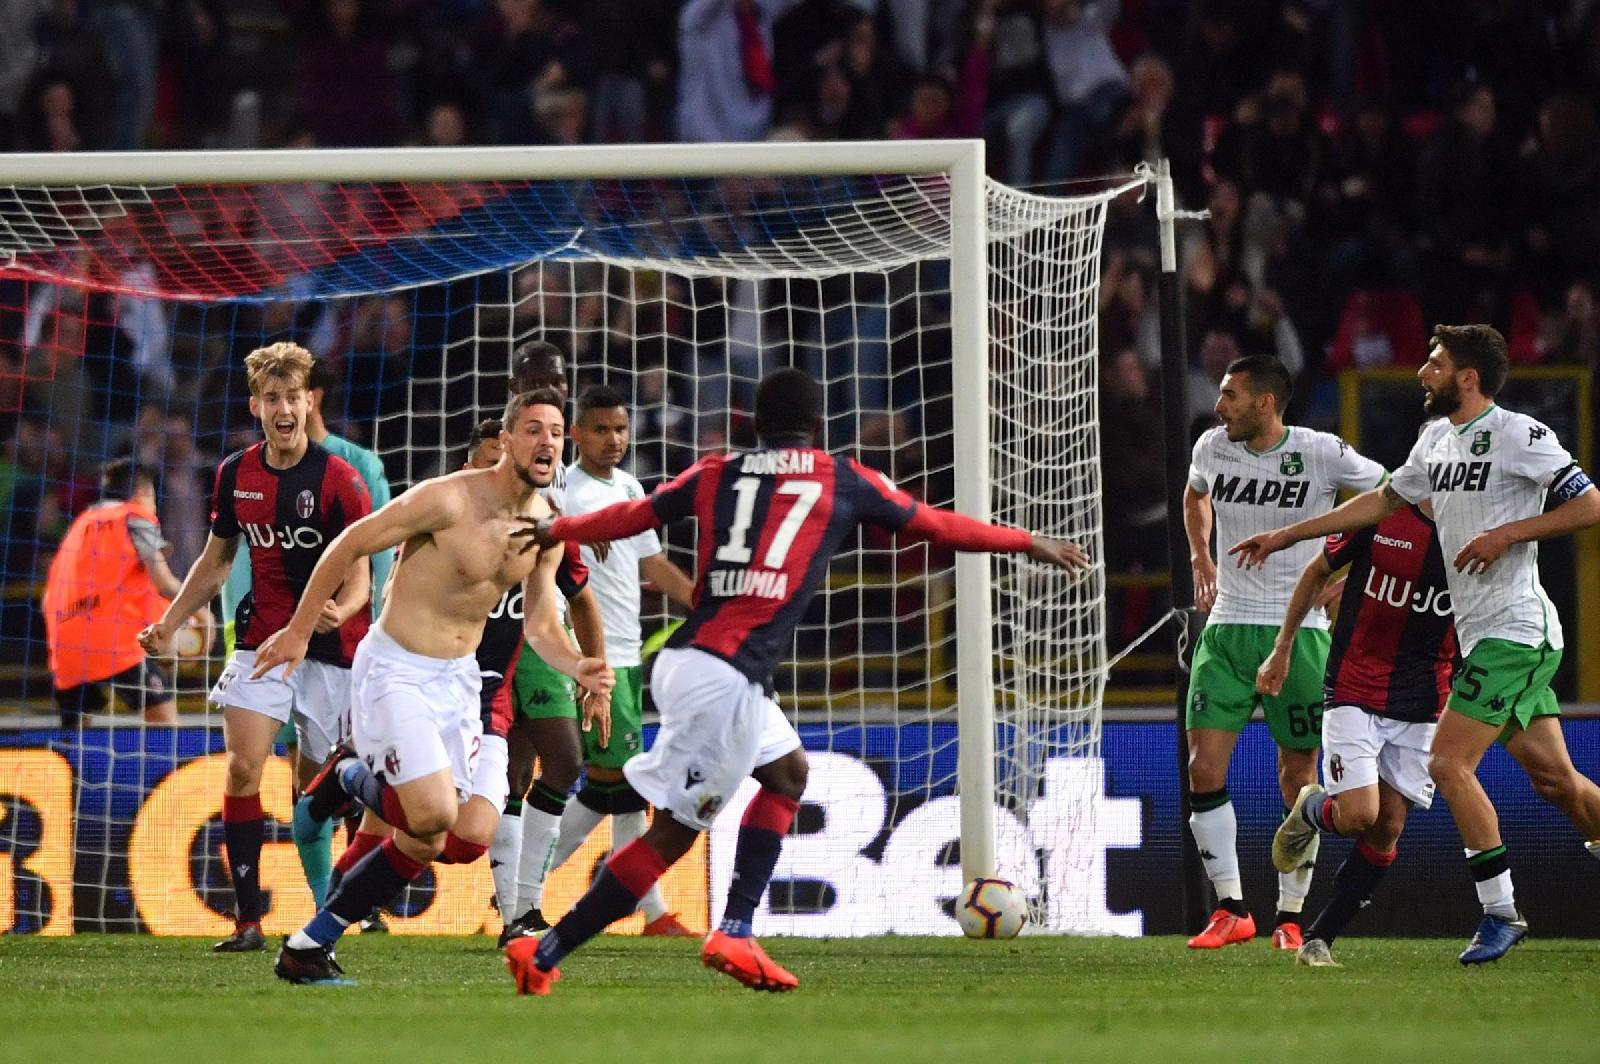 Serie A: punti d'oro per Bologna e Spal, l'Inter cade in casa©LaPresse